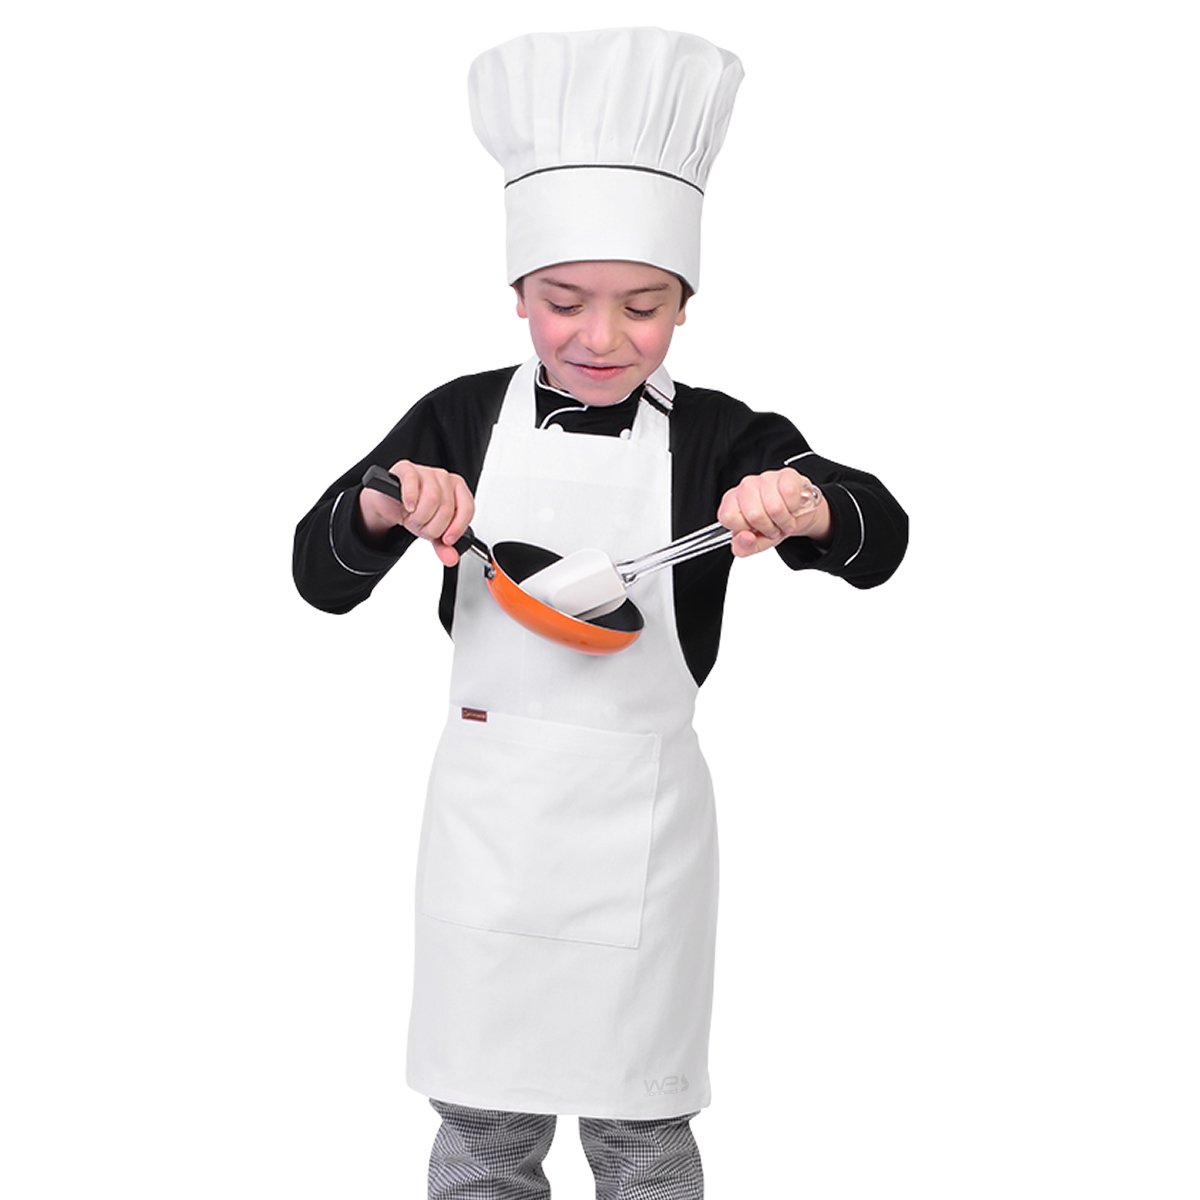 Avental Infantil Chef de Cozinha Corpo Inteiro de 04 a 08 anos - Wp Connect - Branco - Único - 2